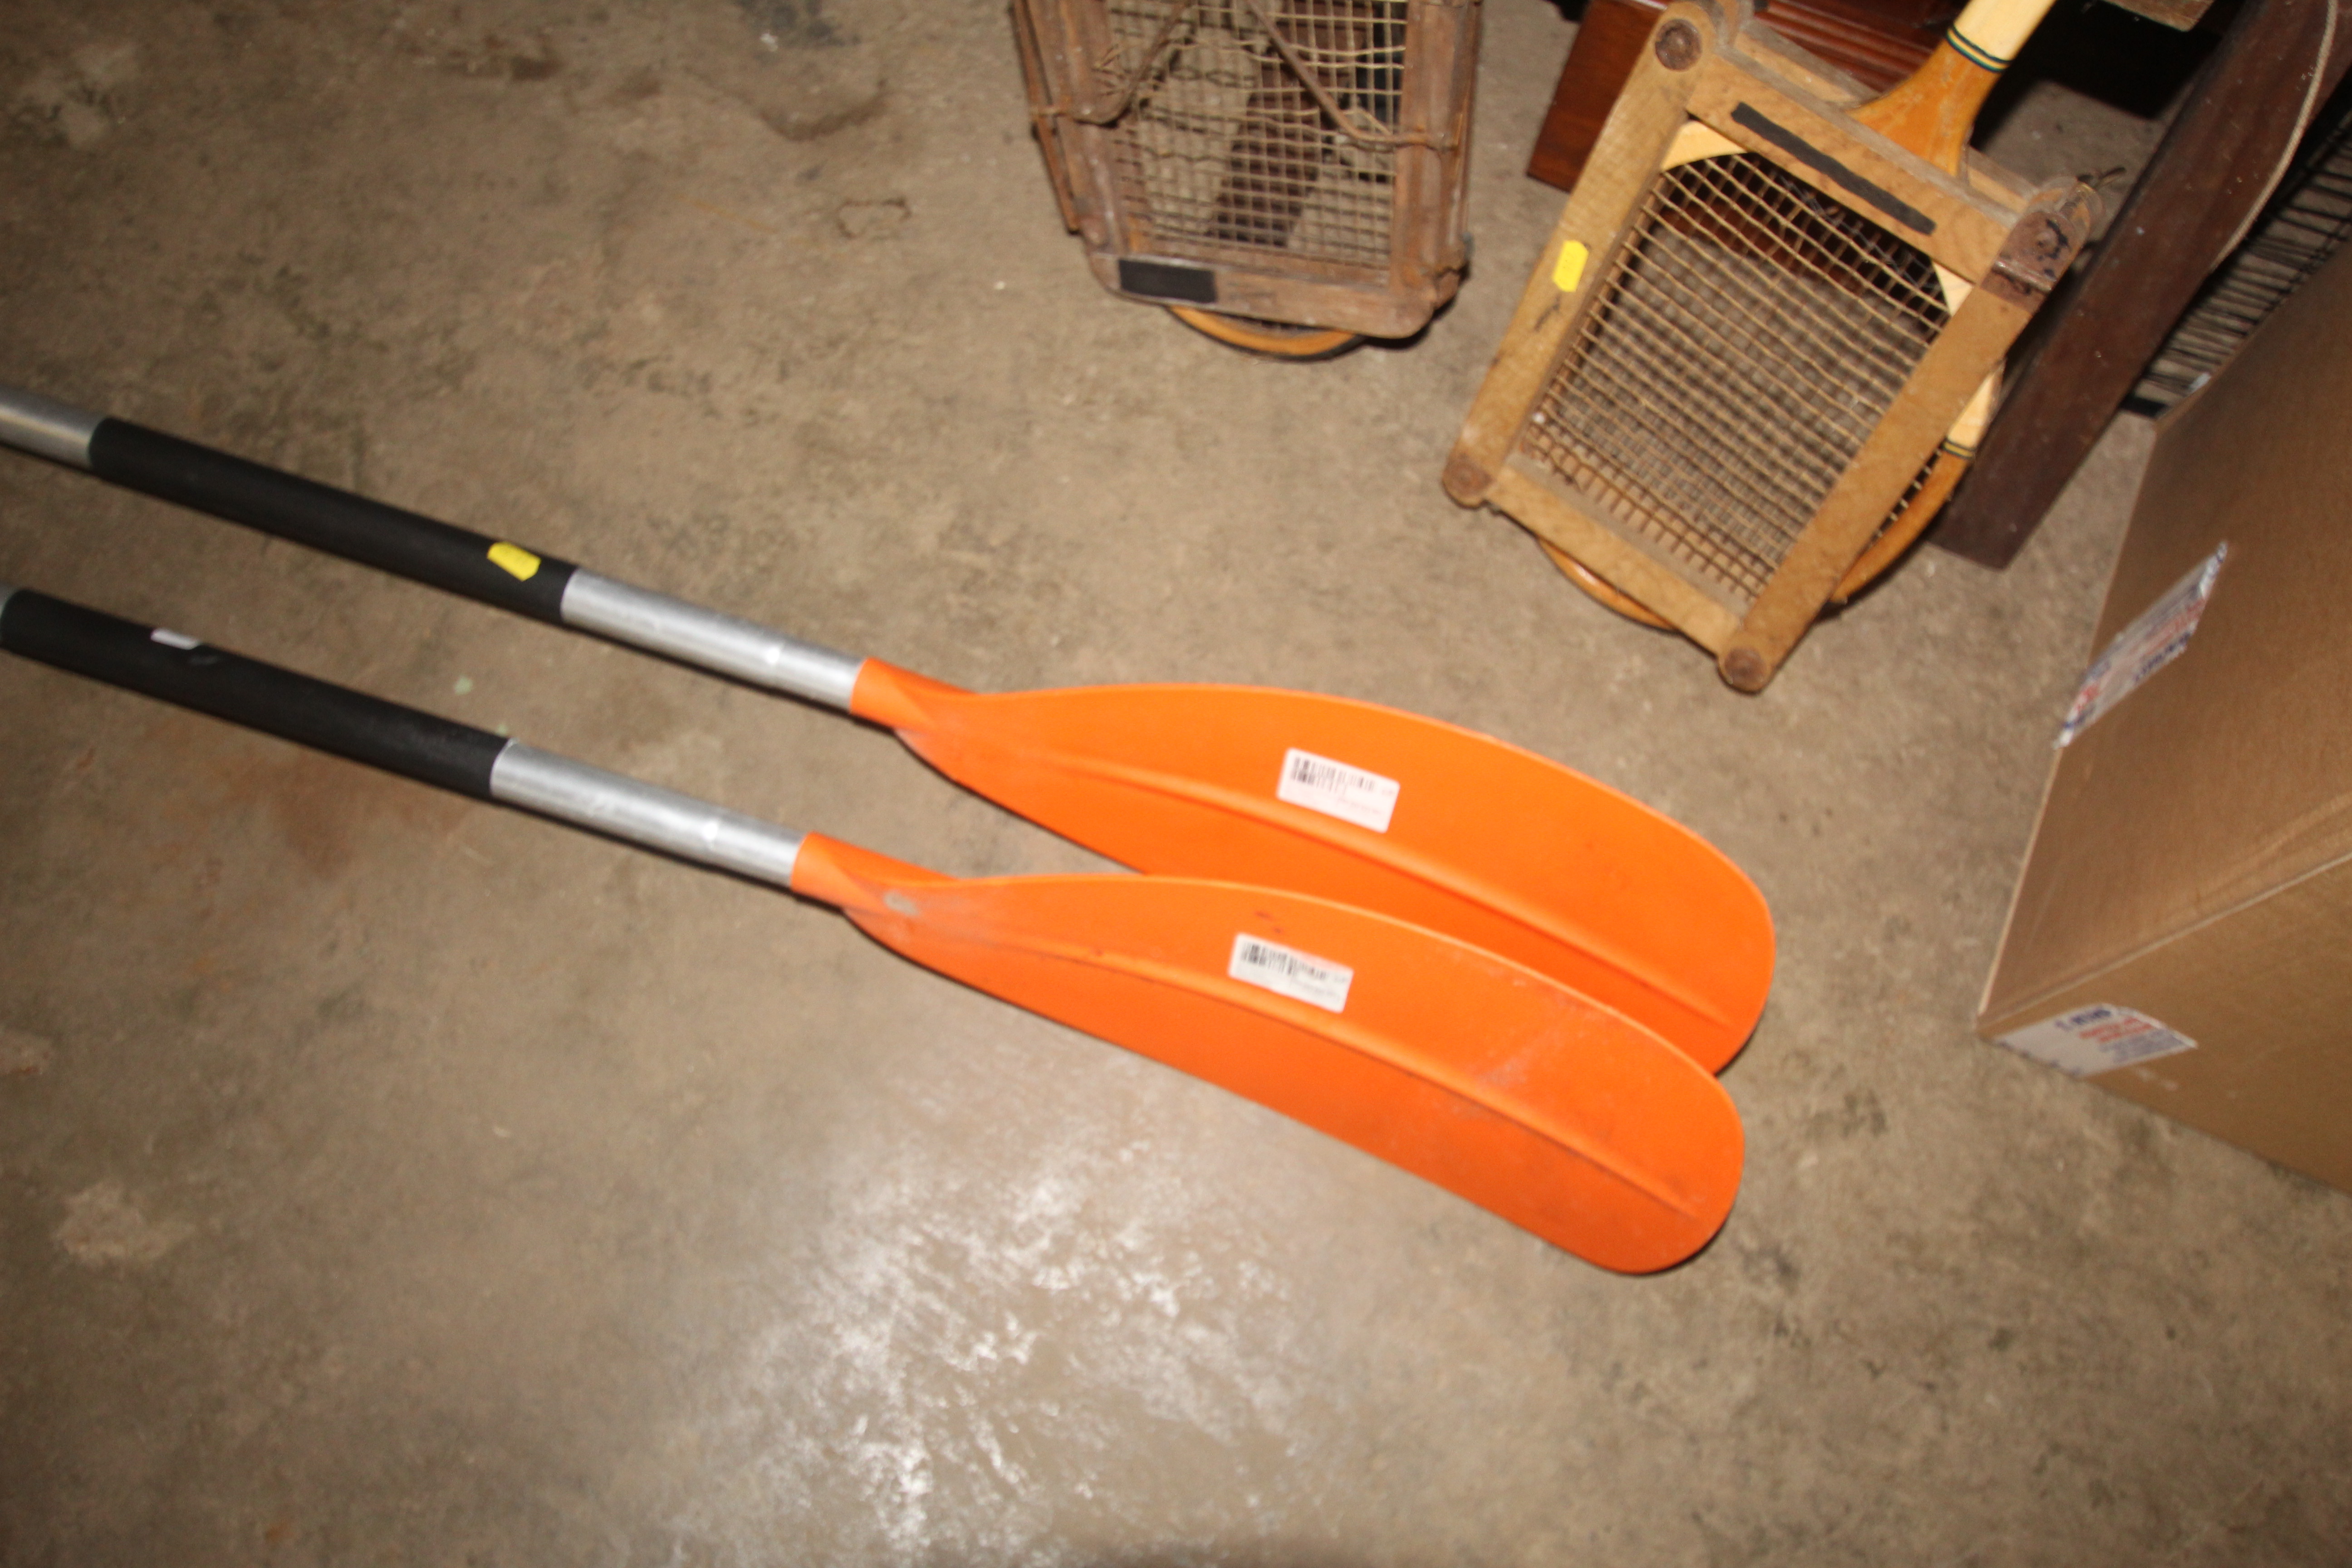 Two kayak paddles - Image 2 of 3